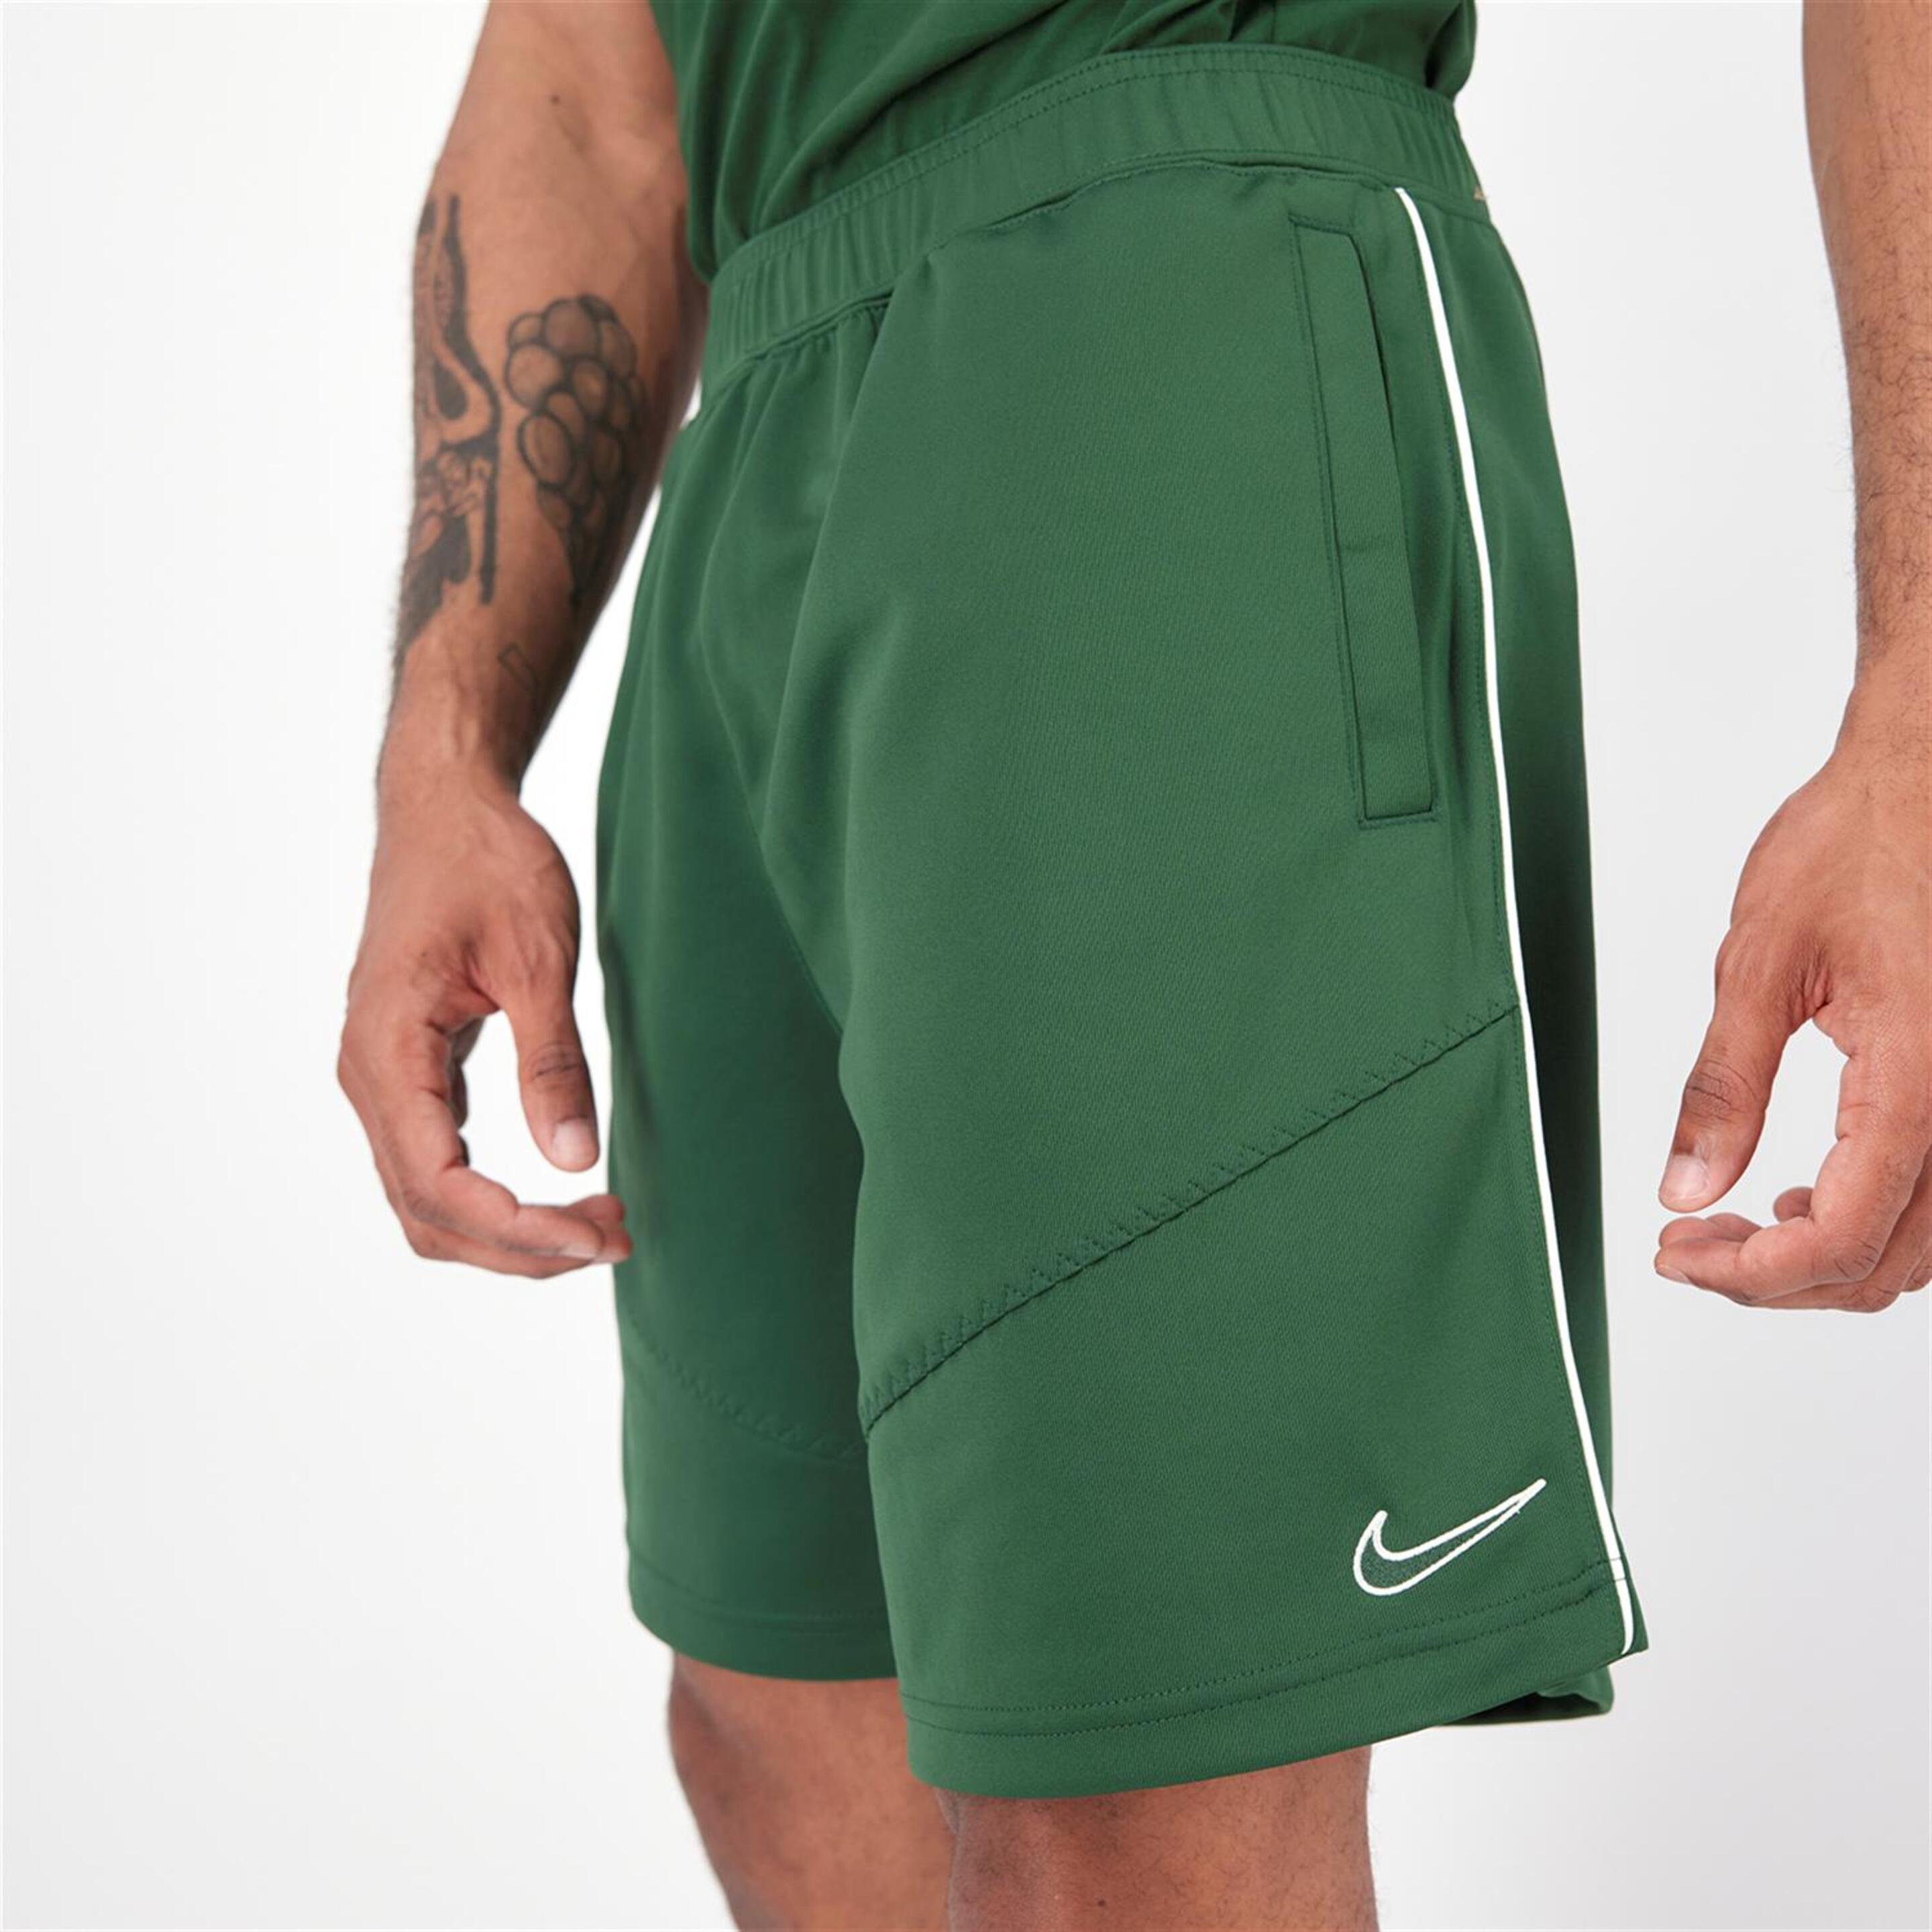 Nike Sp - verde - Pantalón Corto Hombre